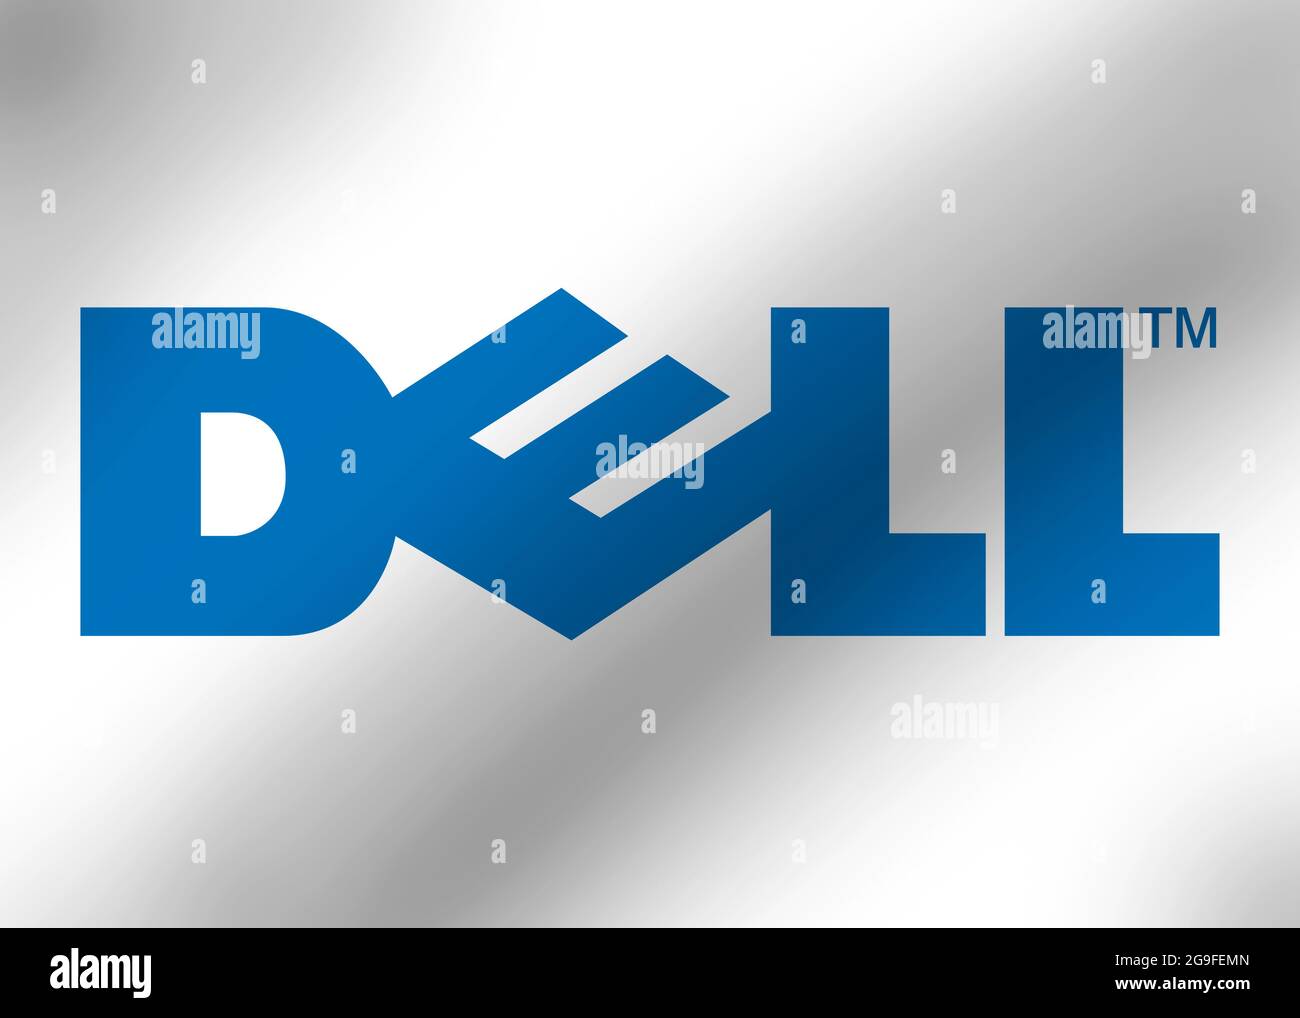 Dell logo Stock Photo